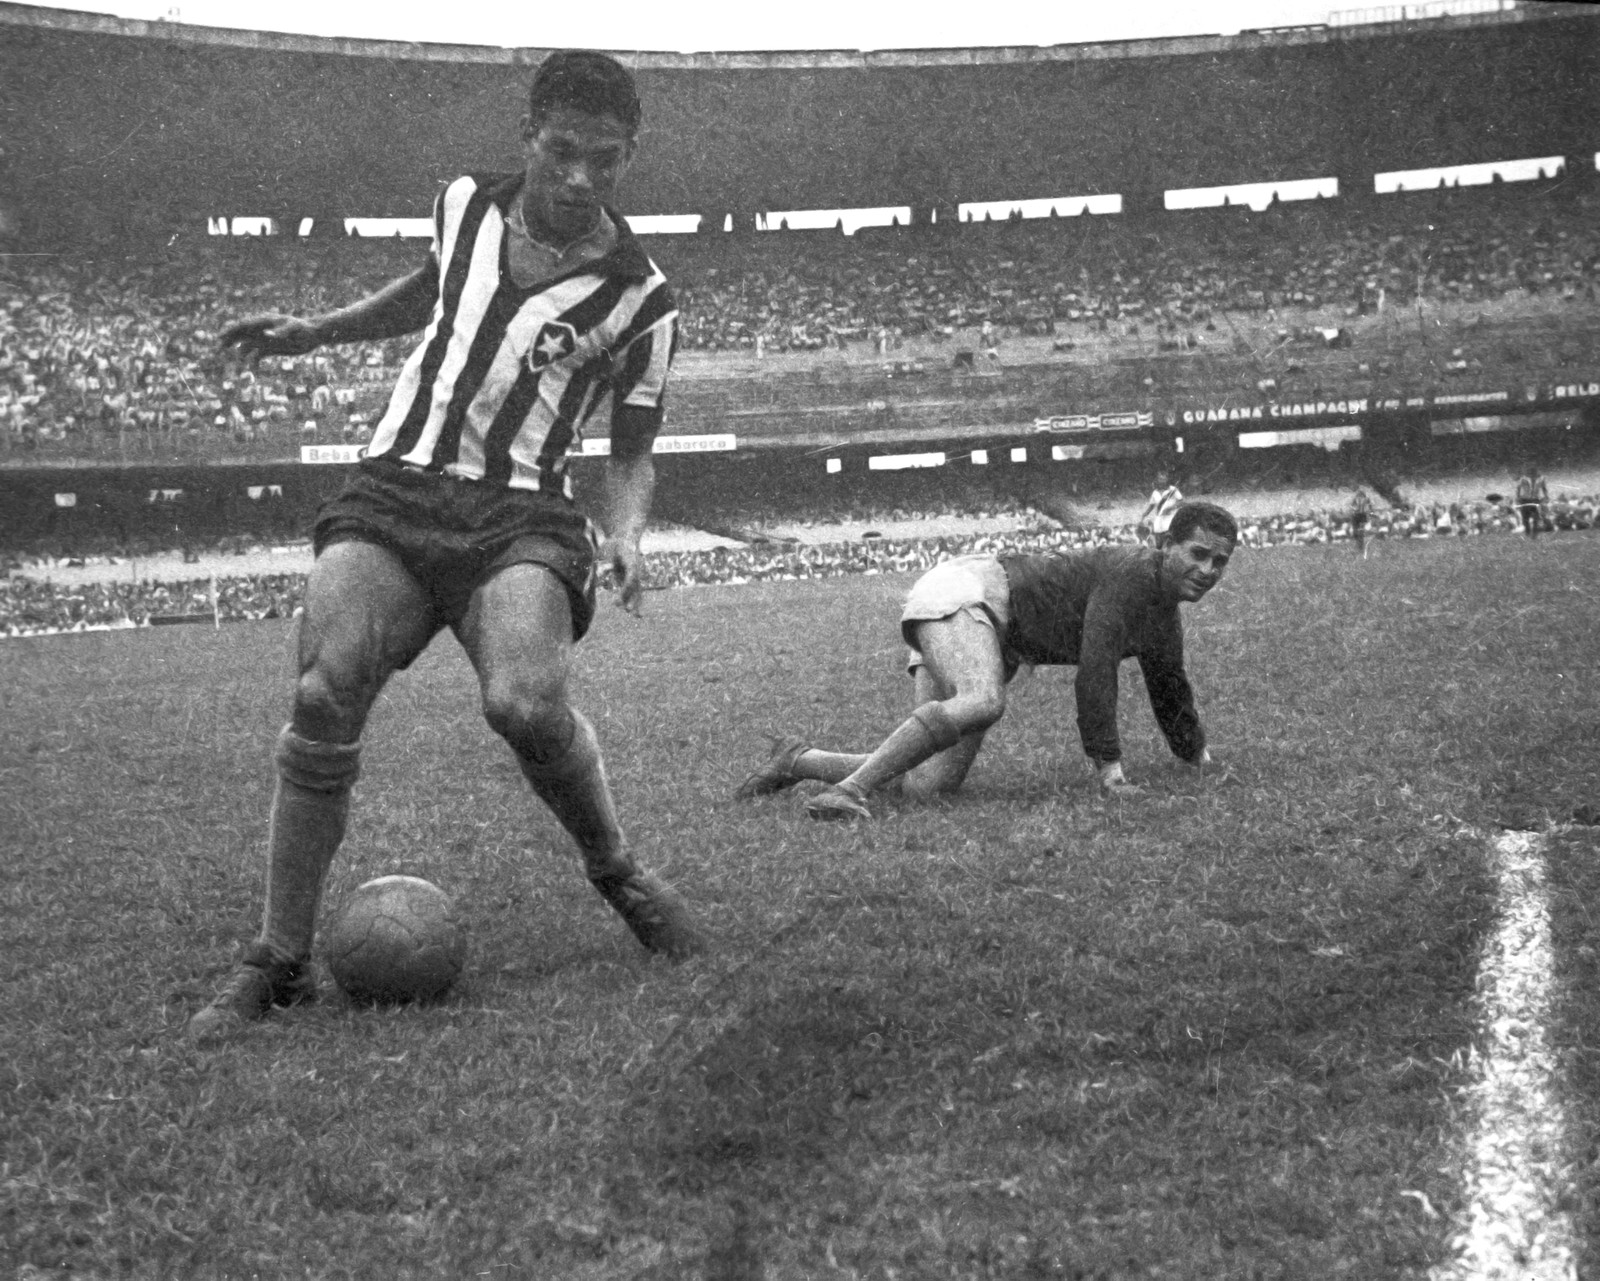 Anjo das pernas tortas, Garrincha só aparece atrás de Pelé no ranking — Foto: Arquivo / Agência O Globo